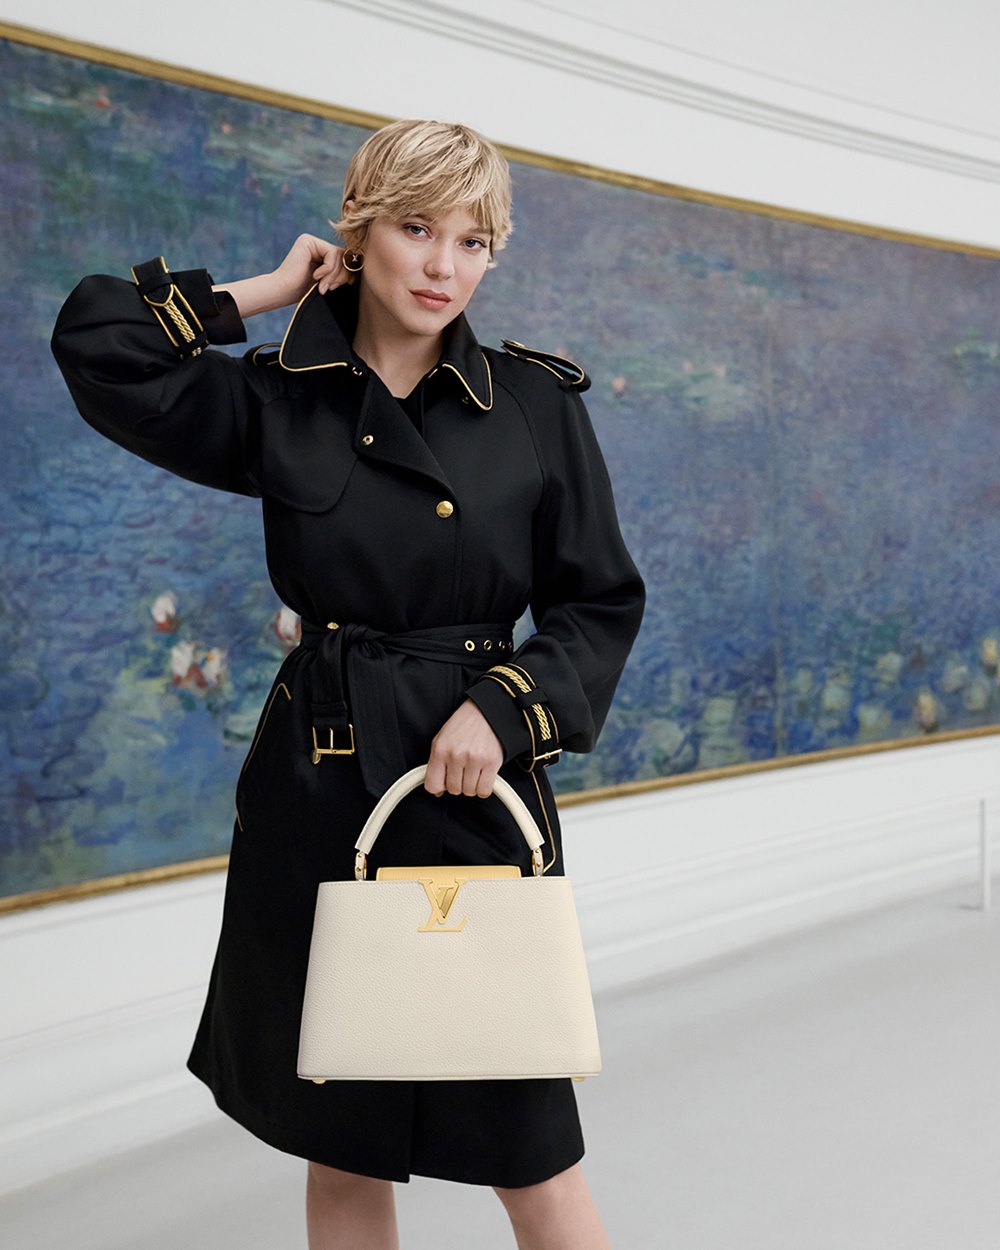 A atriz Léa Seydoux, uma mulher branca e jovem, de cabelo loiro liso e curto, posa em campanha da marca Louis Vuitton. Ela está sentada em um banco, dentro de um museu, e usa um top preto, uma saia branca, um casaco preto e a bolsa Capucines, de couro, da marca. - Metrópoles